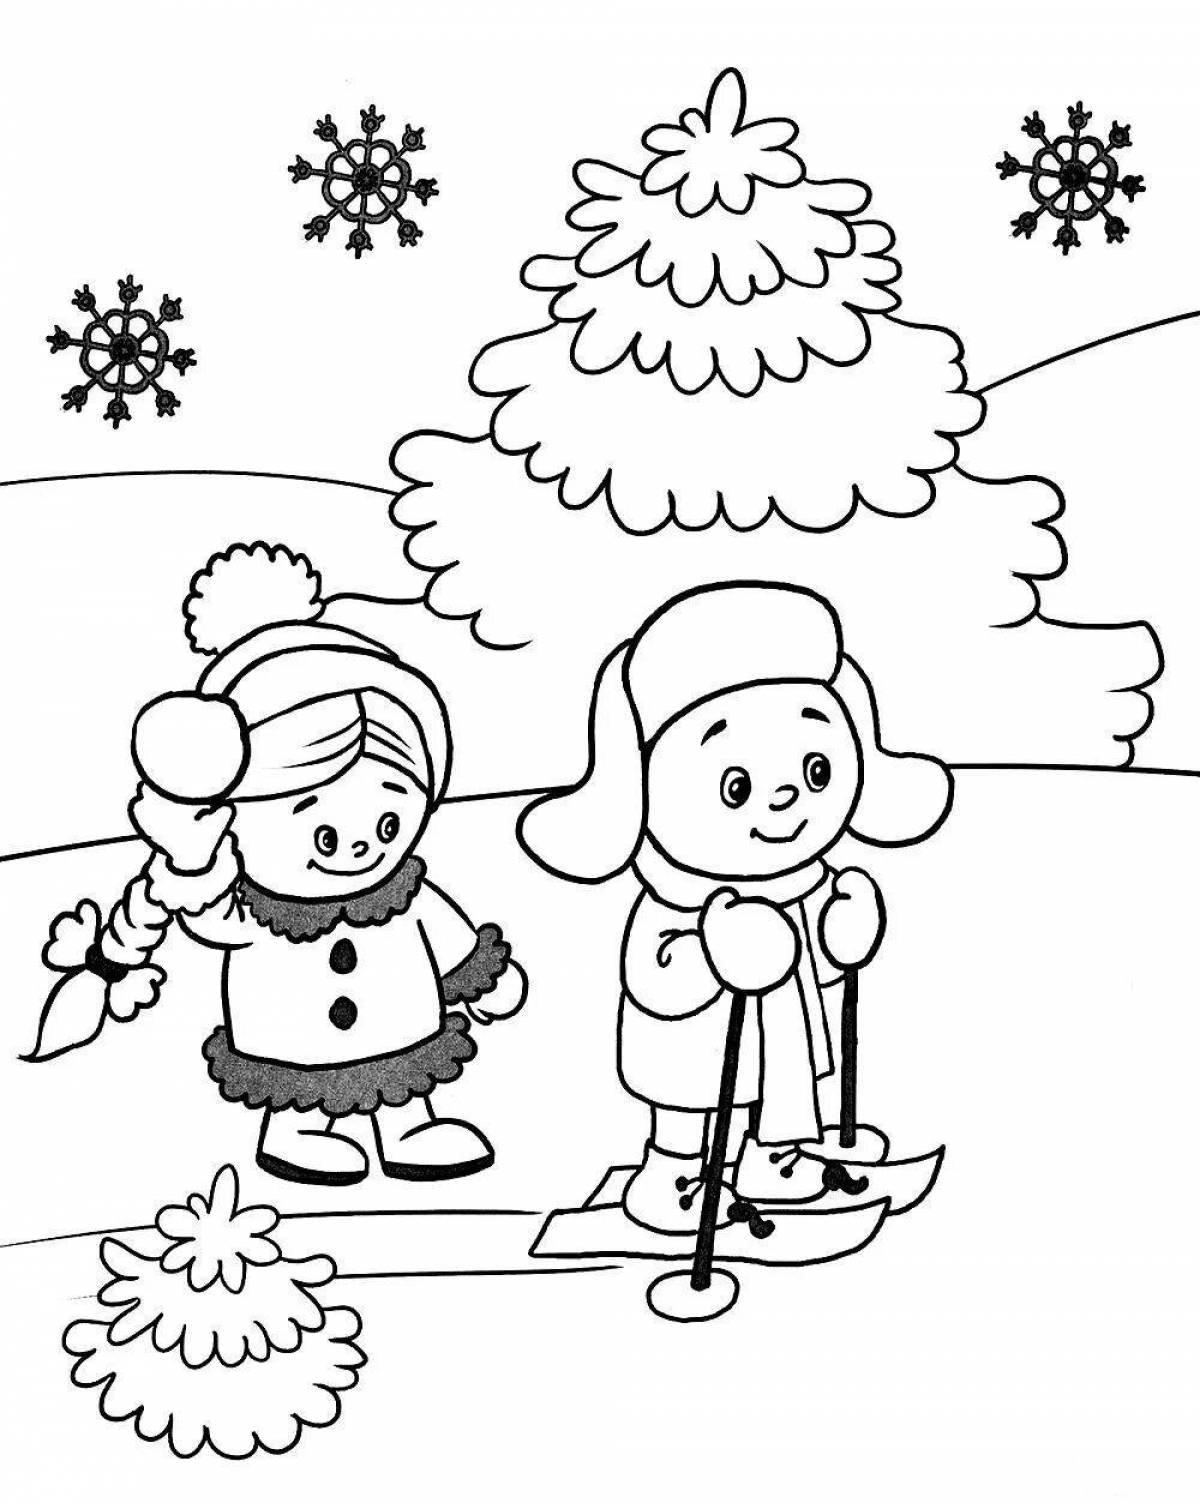 Joyful children walking in winter